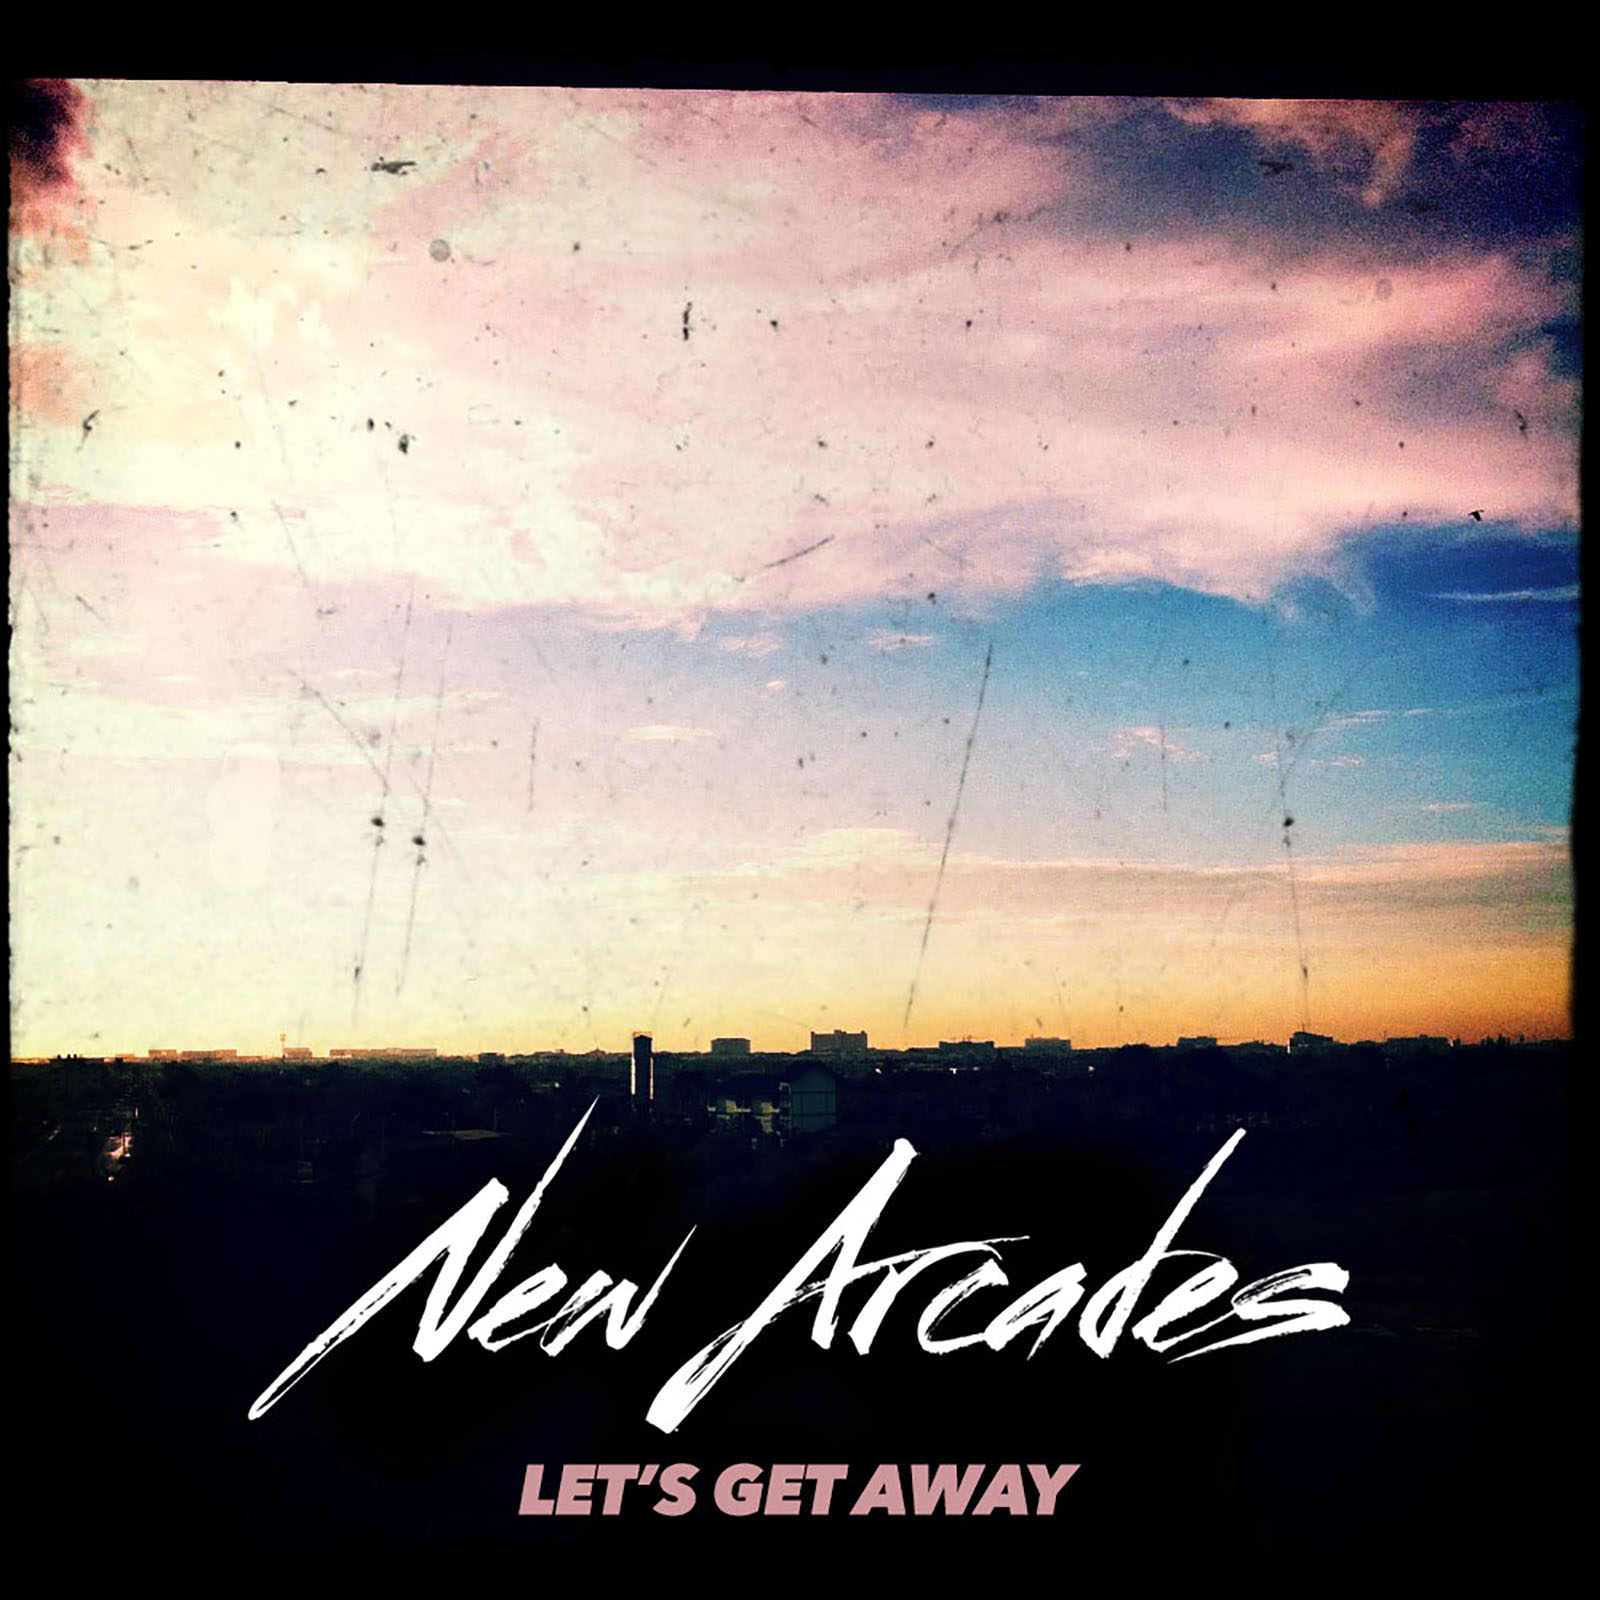 New Arcades – “Let’s Get Away”